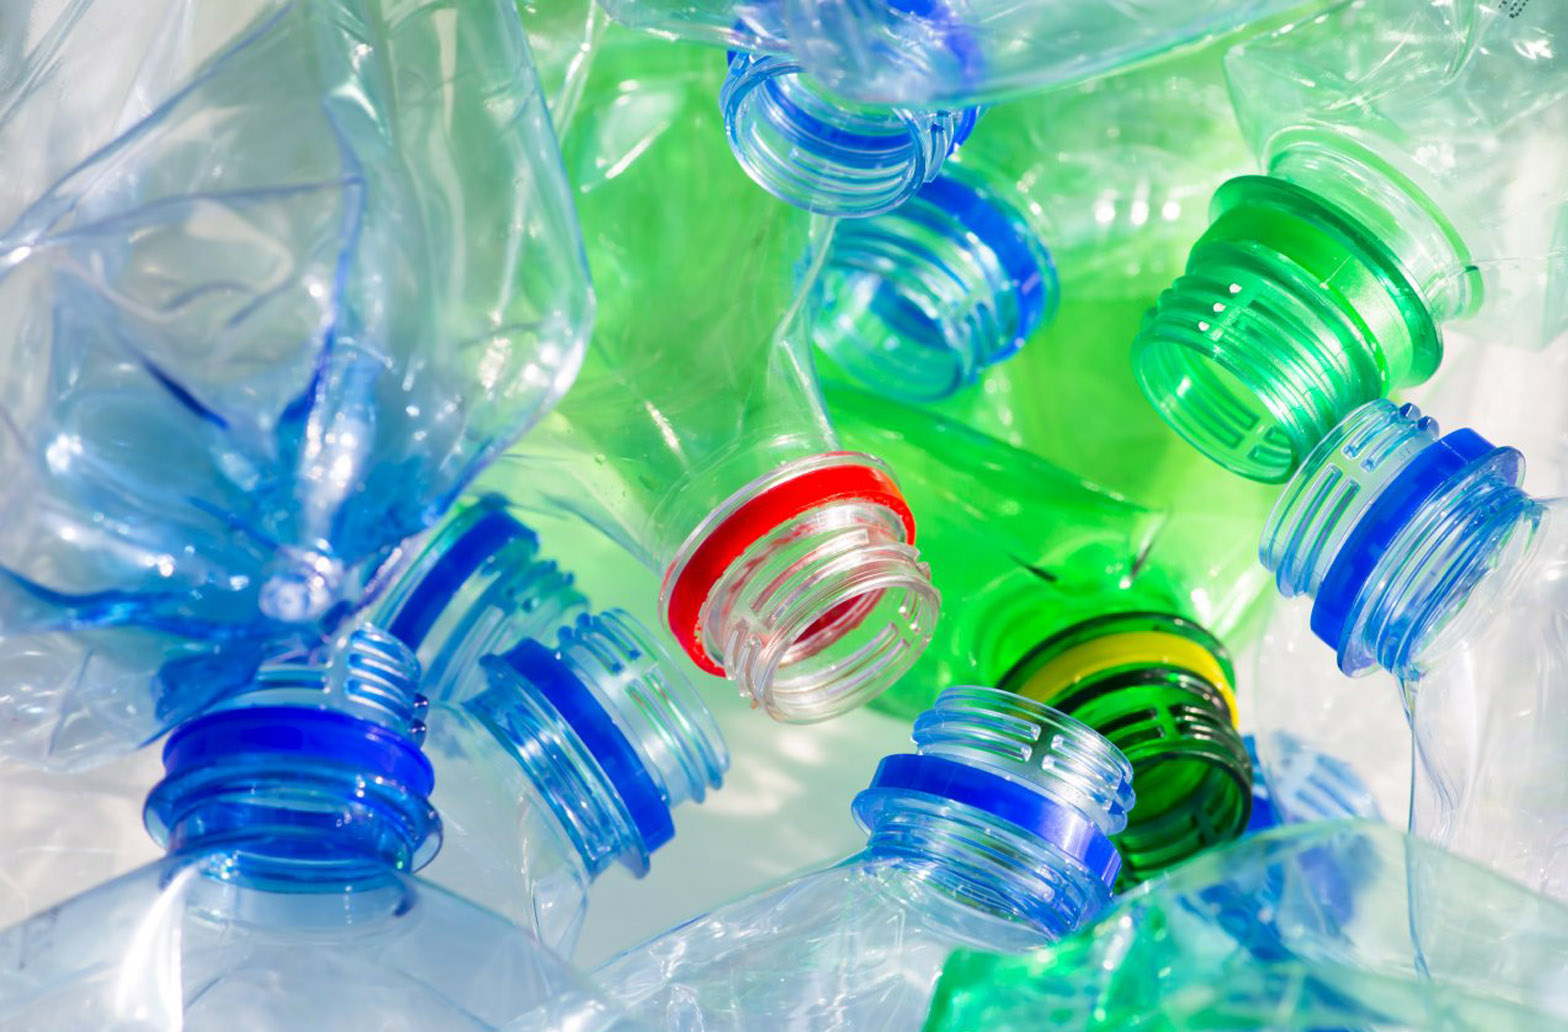 Nyílhegy innováció jelző quien invento las botellas de plastico